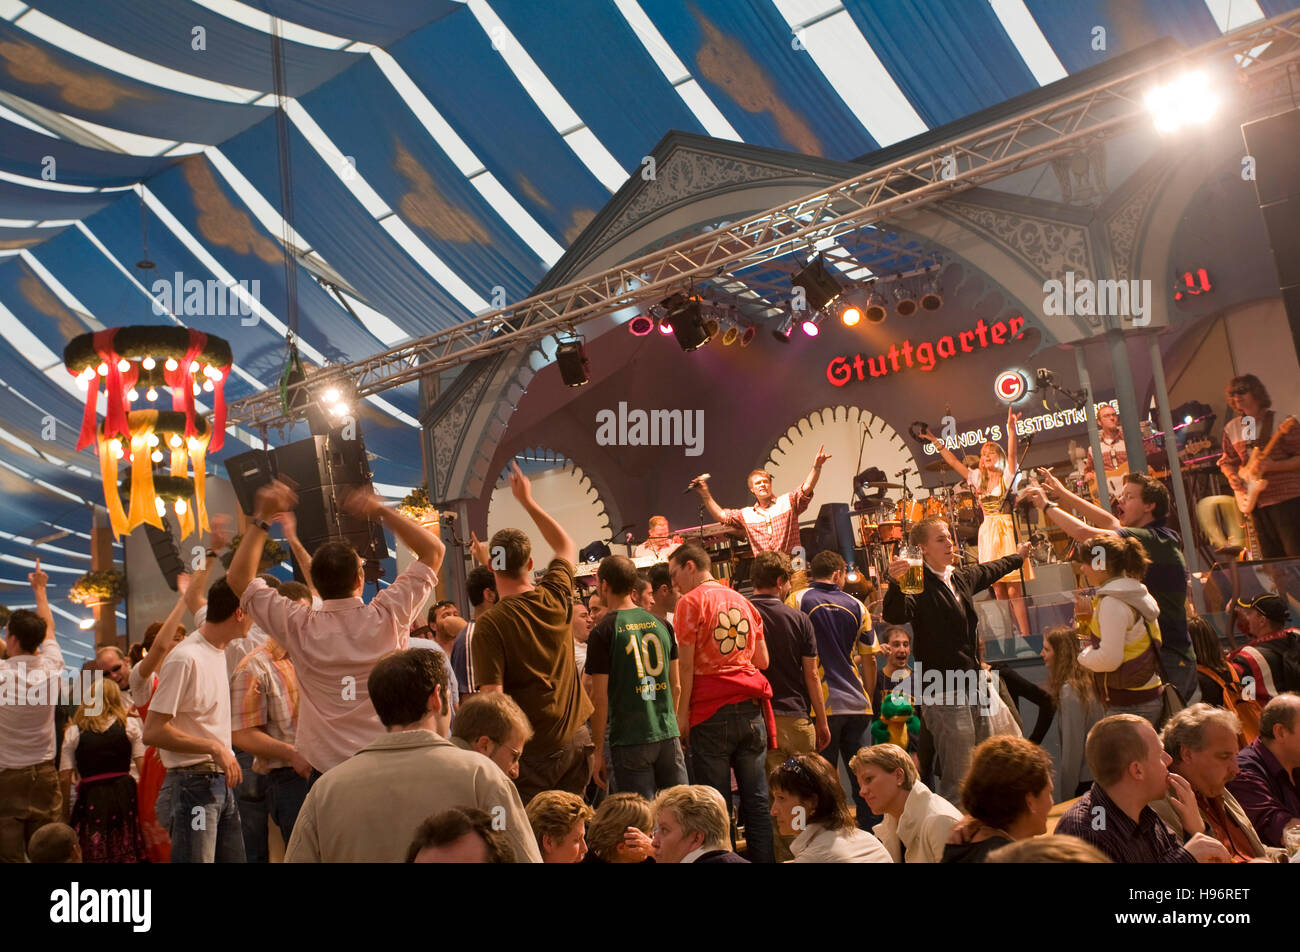 People in a beer tent, Cannstatter Festival, Bad Cannstatt, Stuttgart, Baden-Wuerttemberg, Germany Stock Photo